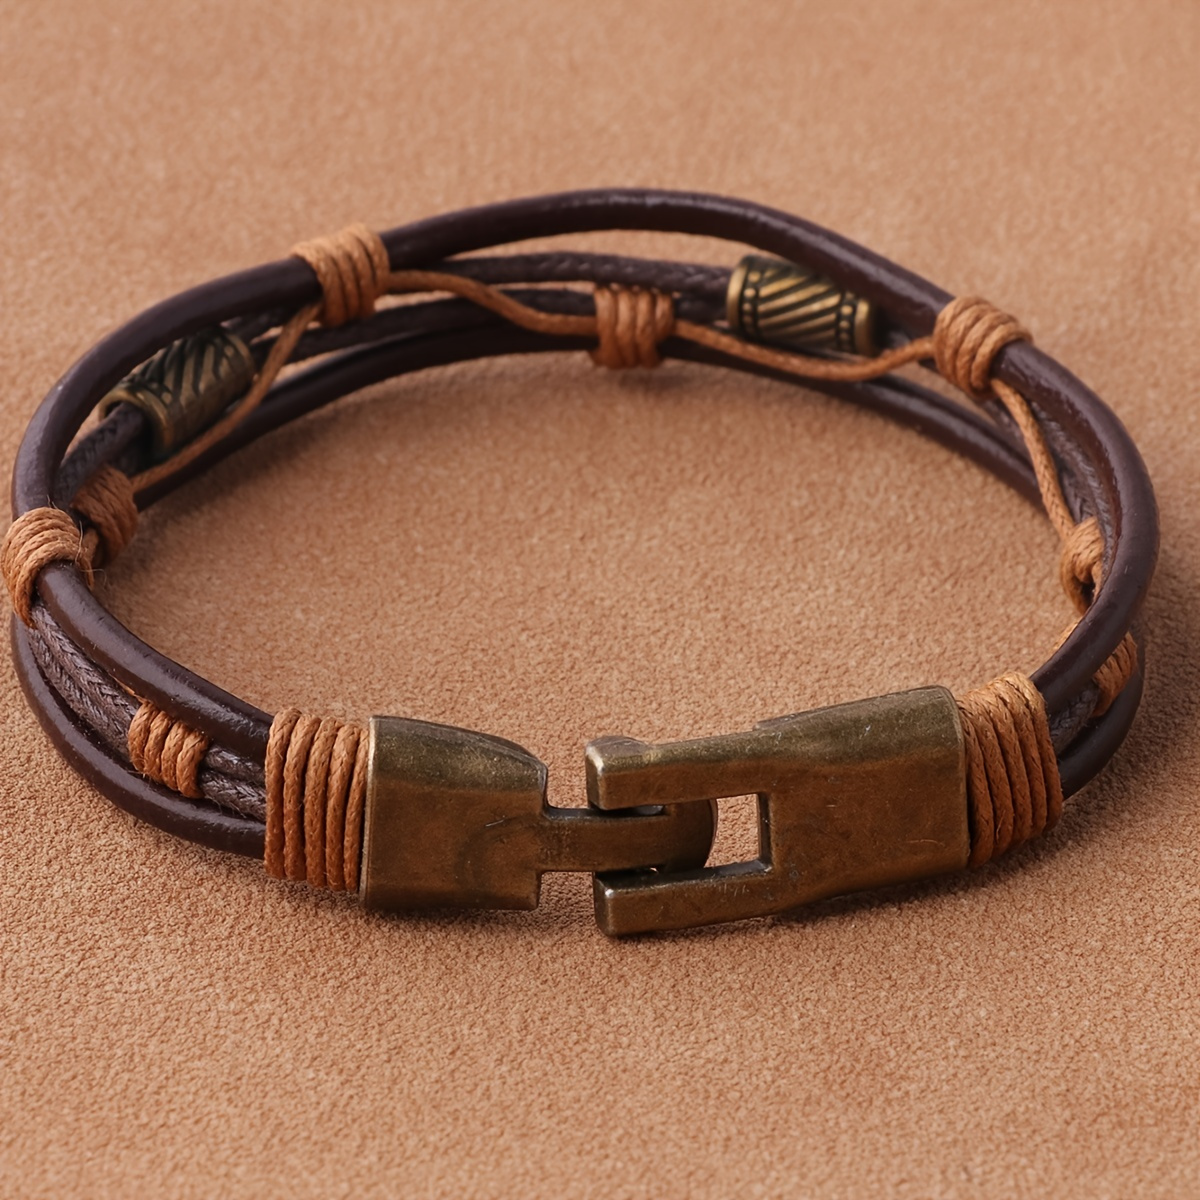 

1pc Men's Vintage Snap Buckle Leather Bracelet